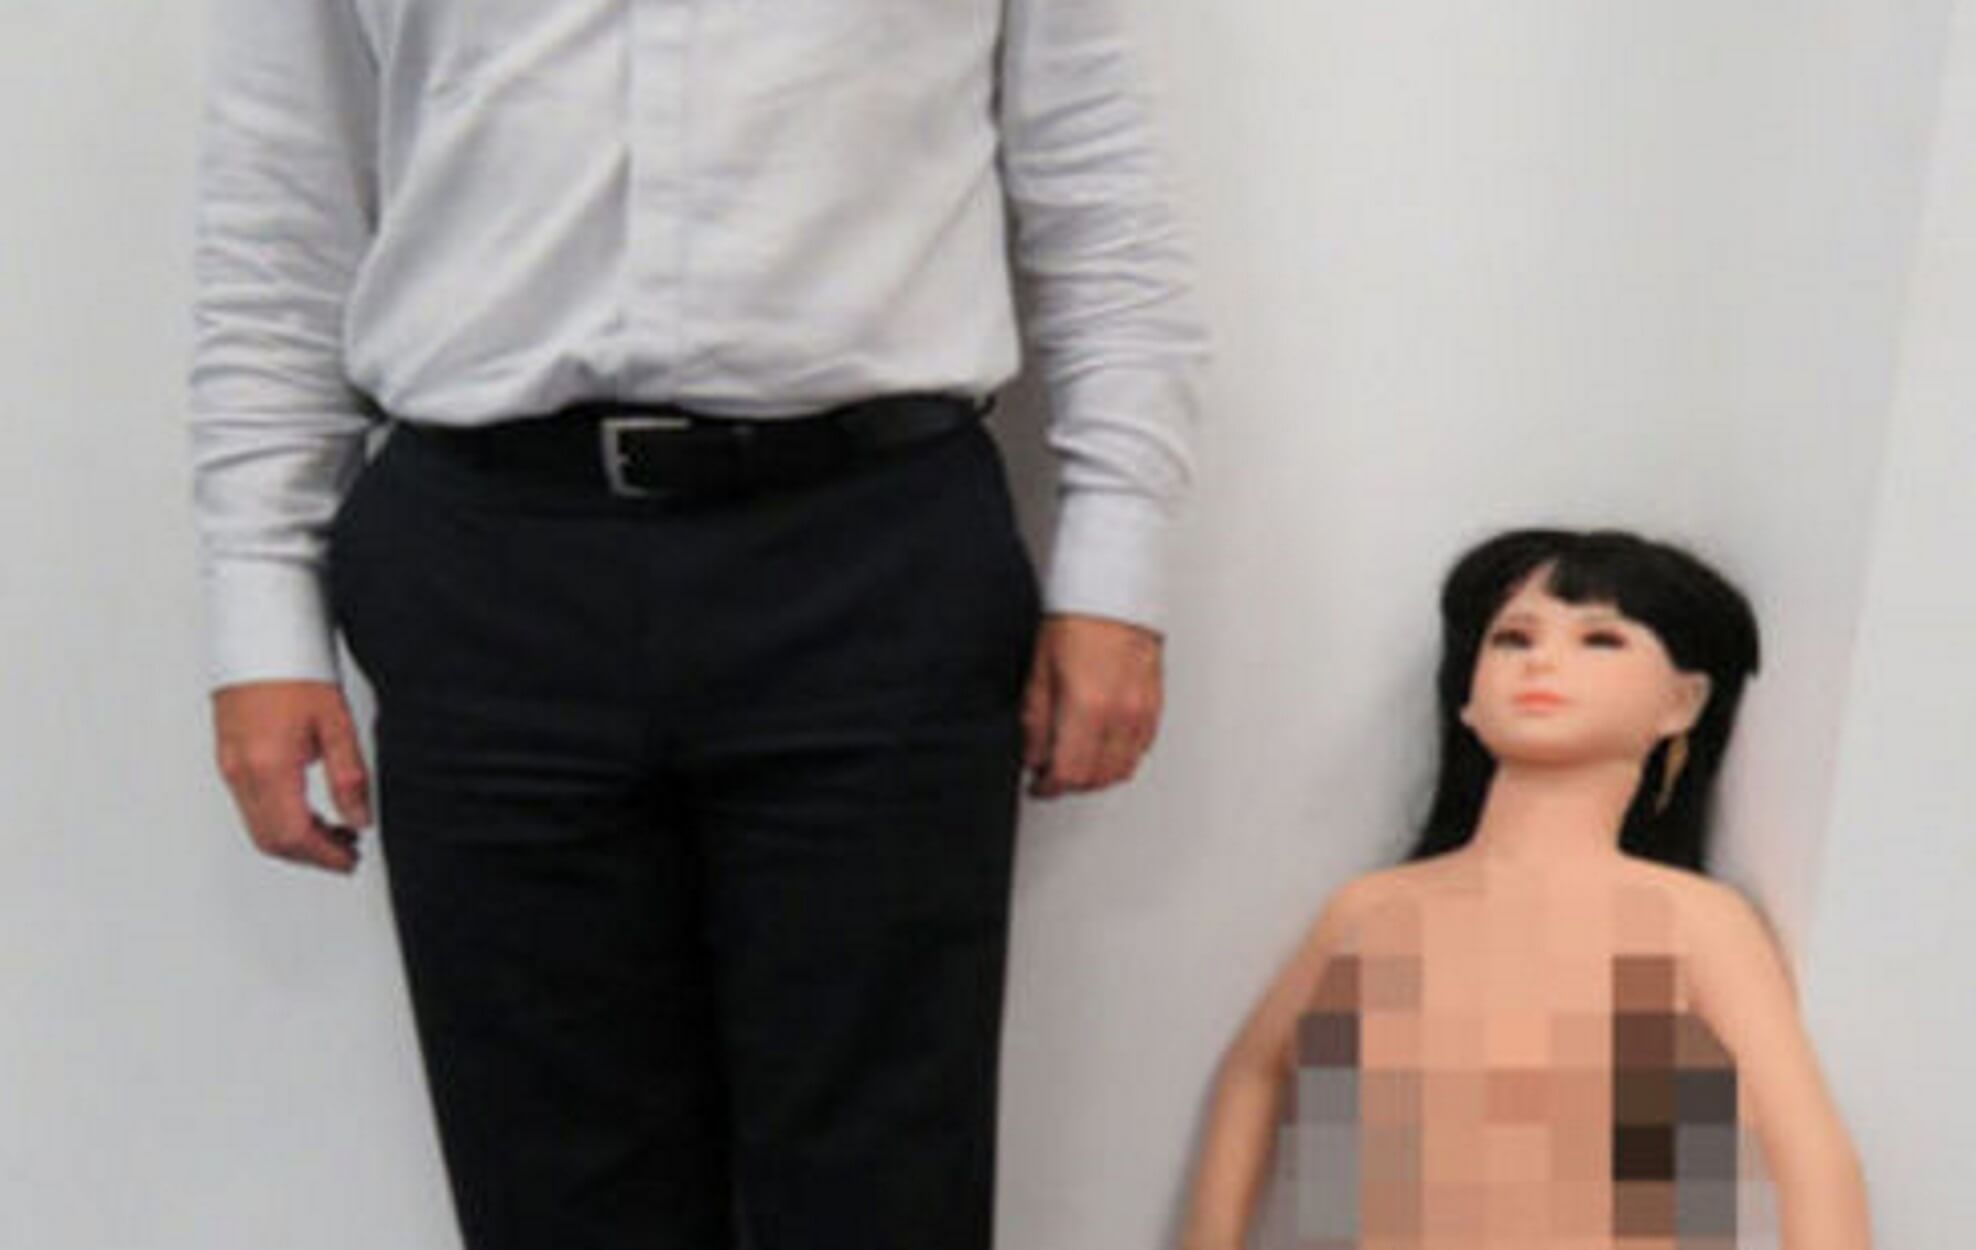 Προσοχή! Αυτή είναι η κούκλα των παιδόφιλων! 72χρονος ομολόγησε ότι έκανε σεξ μαζί της